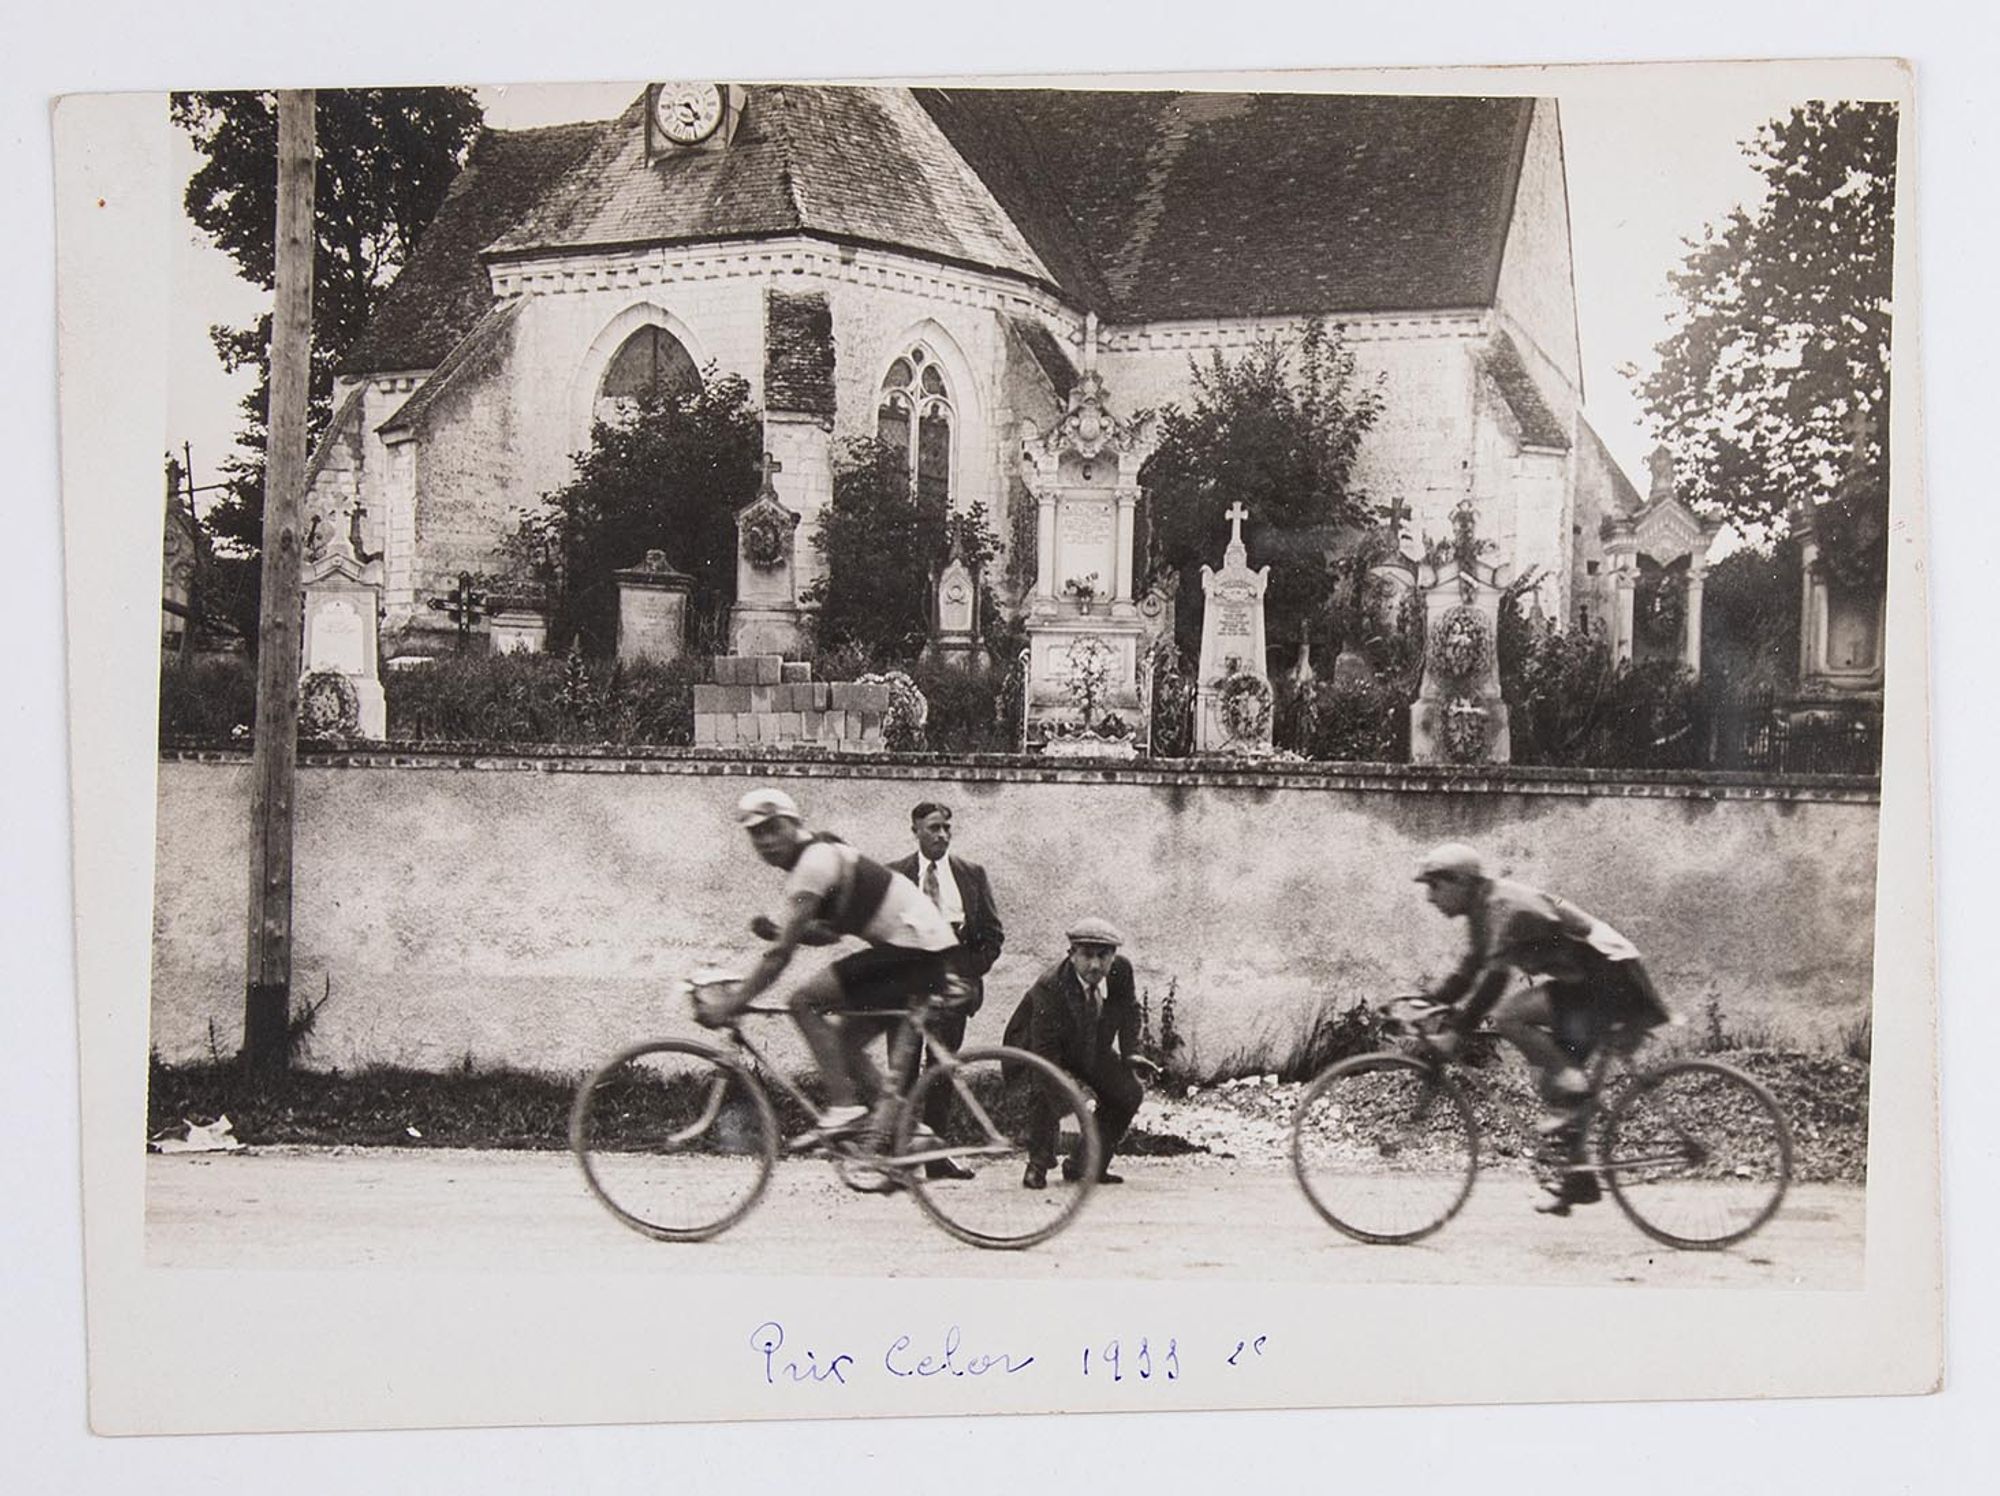 1933. Deux coureurs cyclistes participant au Prix Celor passent devant une église. Lieu non identifié.